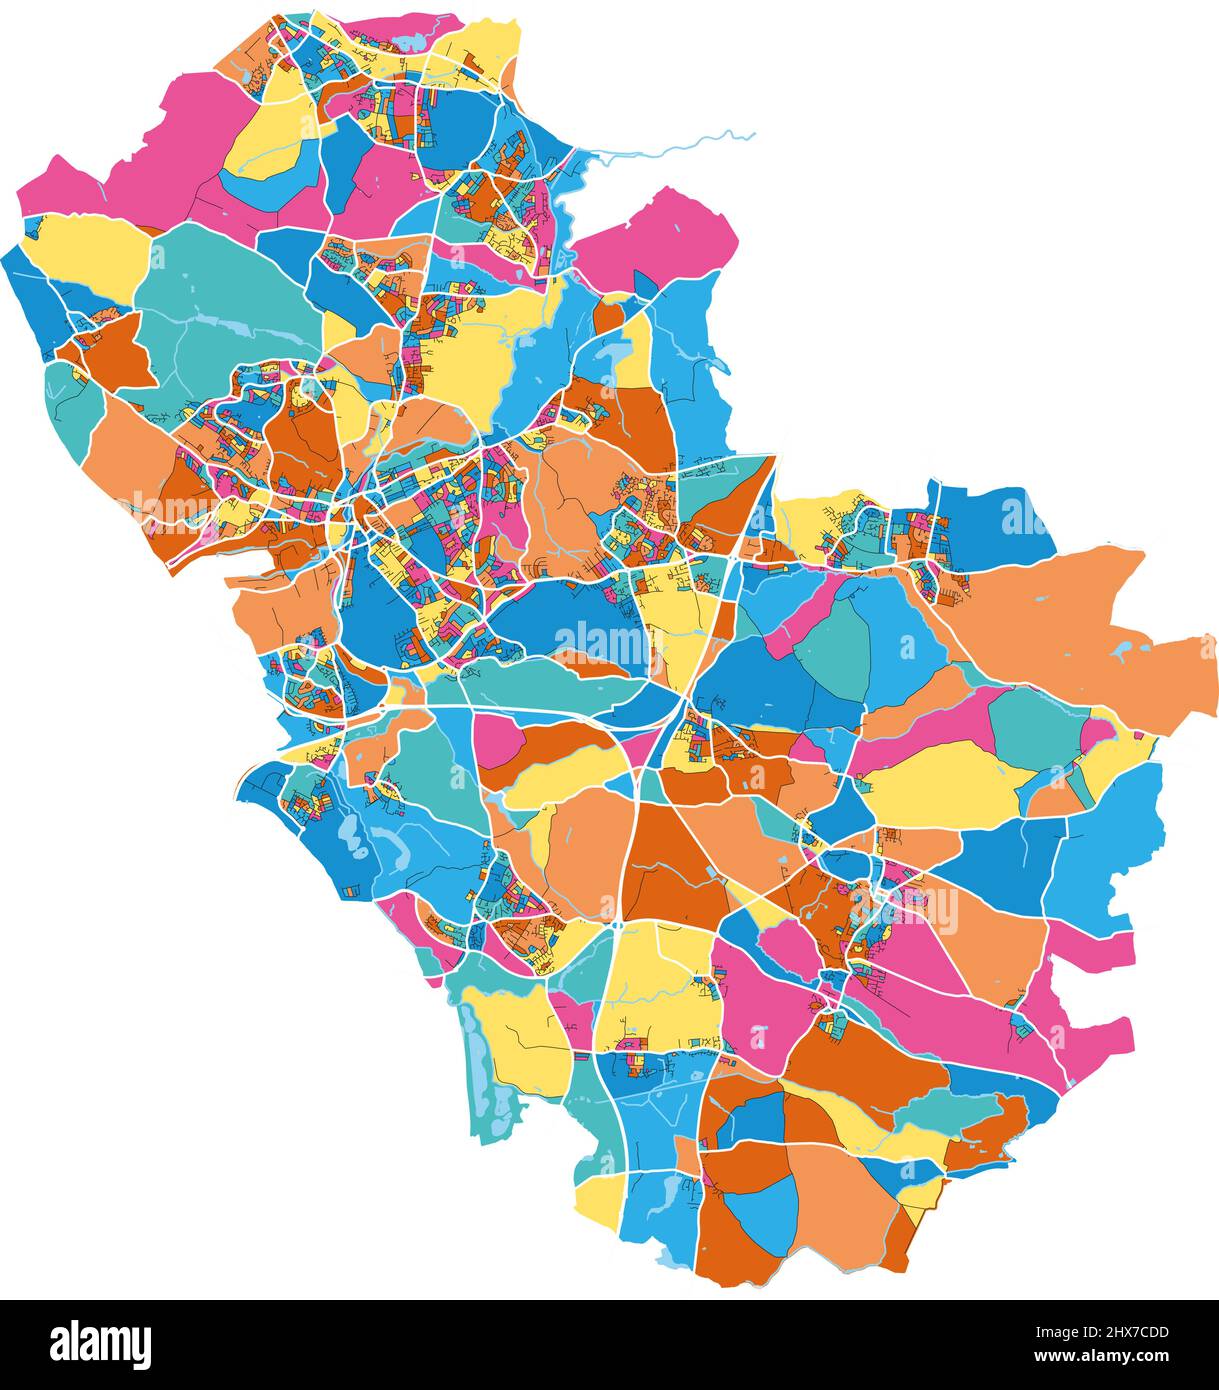 Rotherham, Yorkshire et Humber, Angleterre carte d'art vectoriel haute résolution colorée avec frontières de la ville. Contours blancs pour les routes principales. Beaucoup de détails Illustration de Vecteur